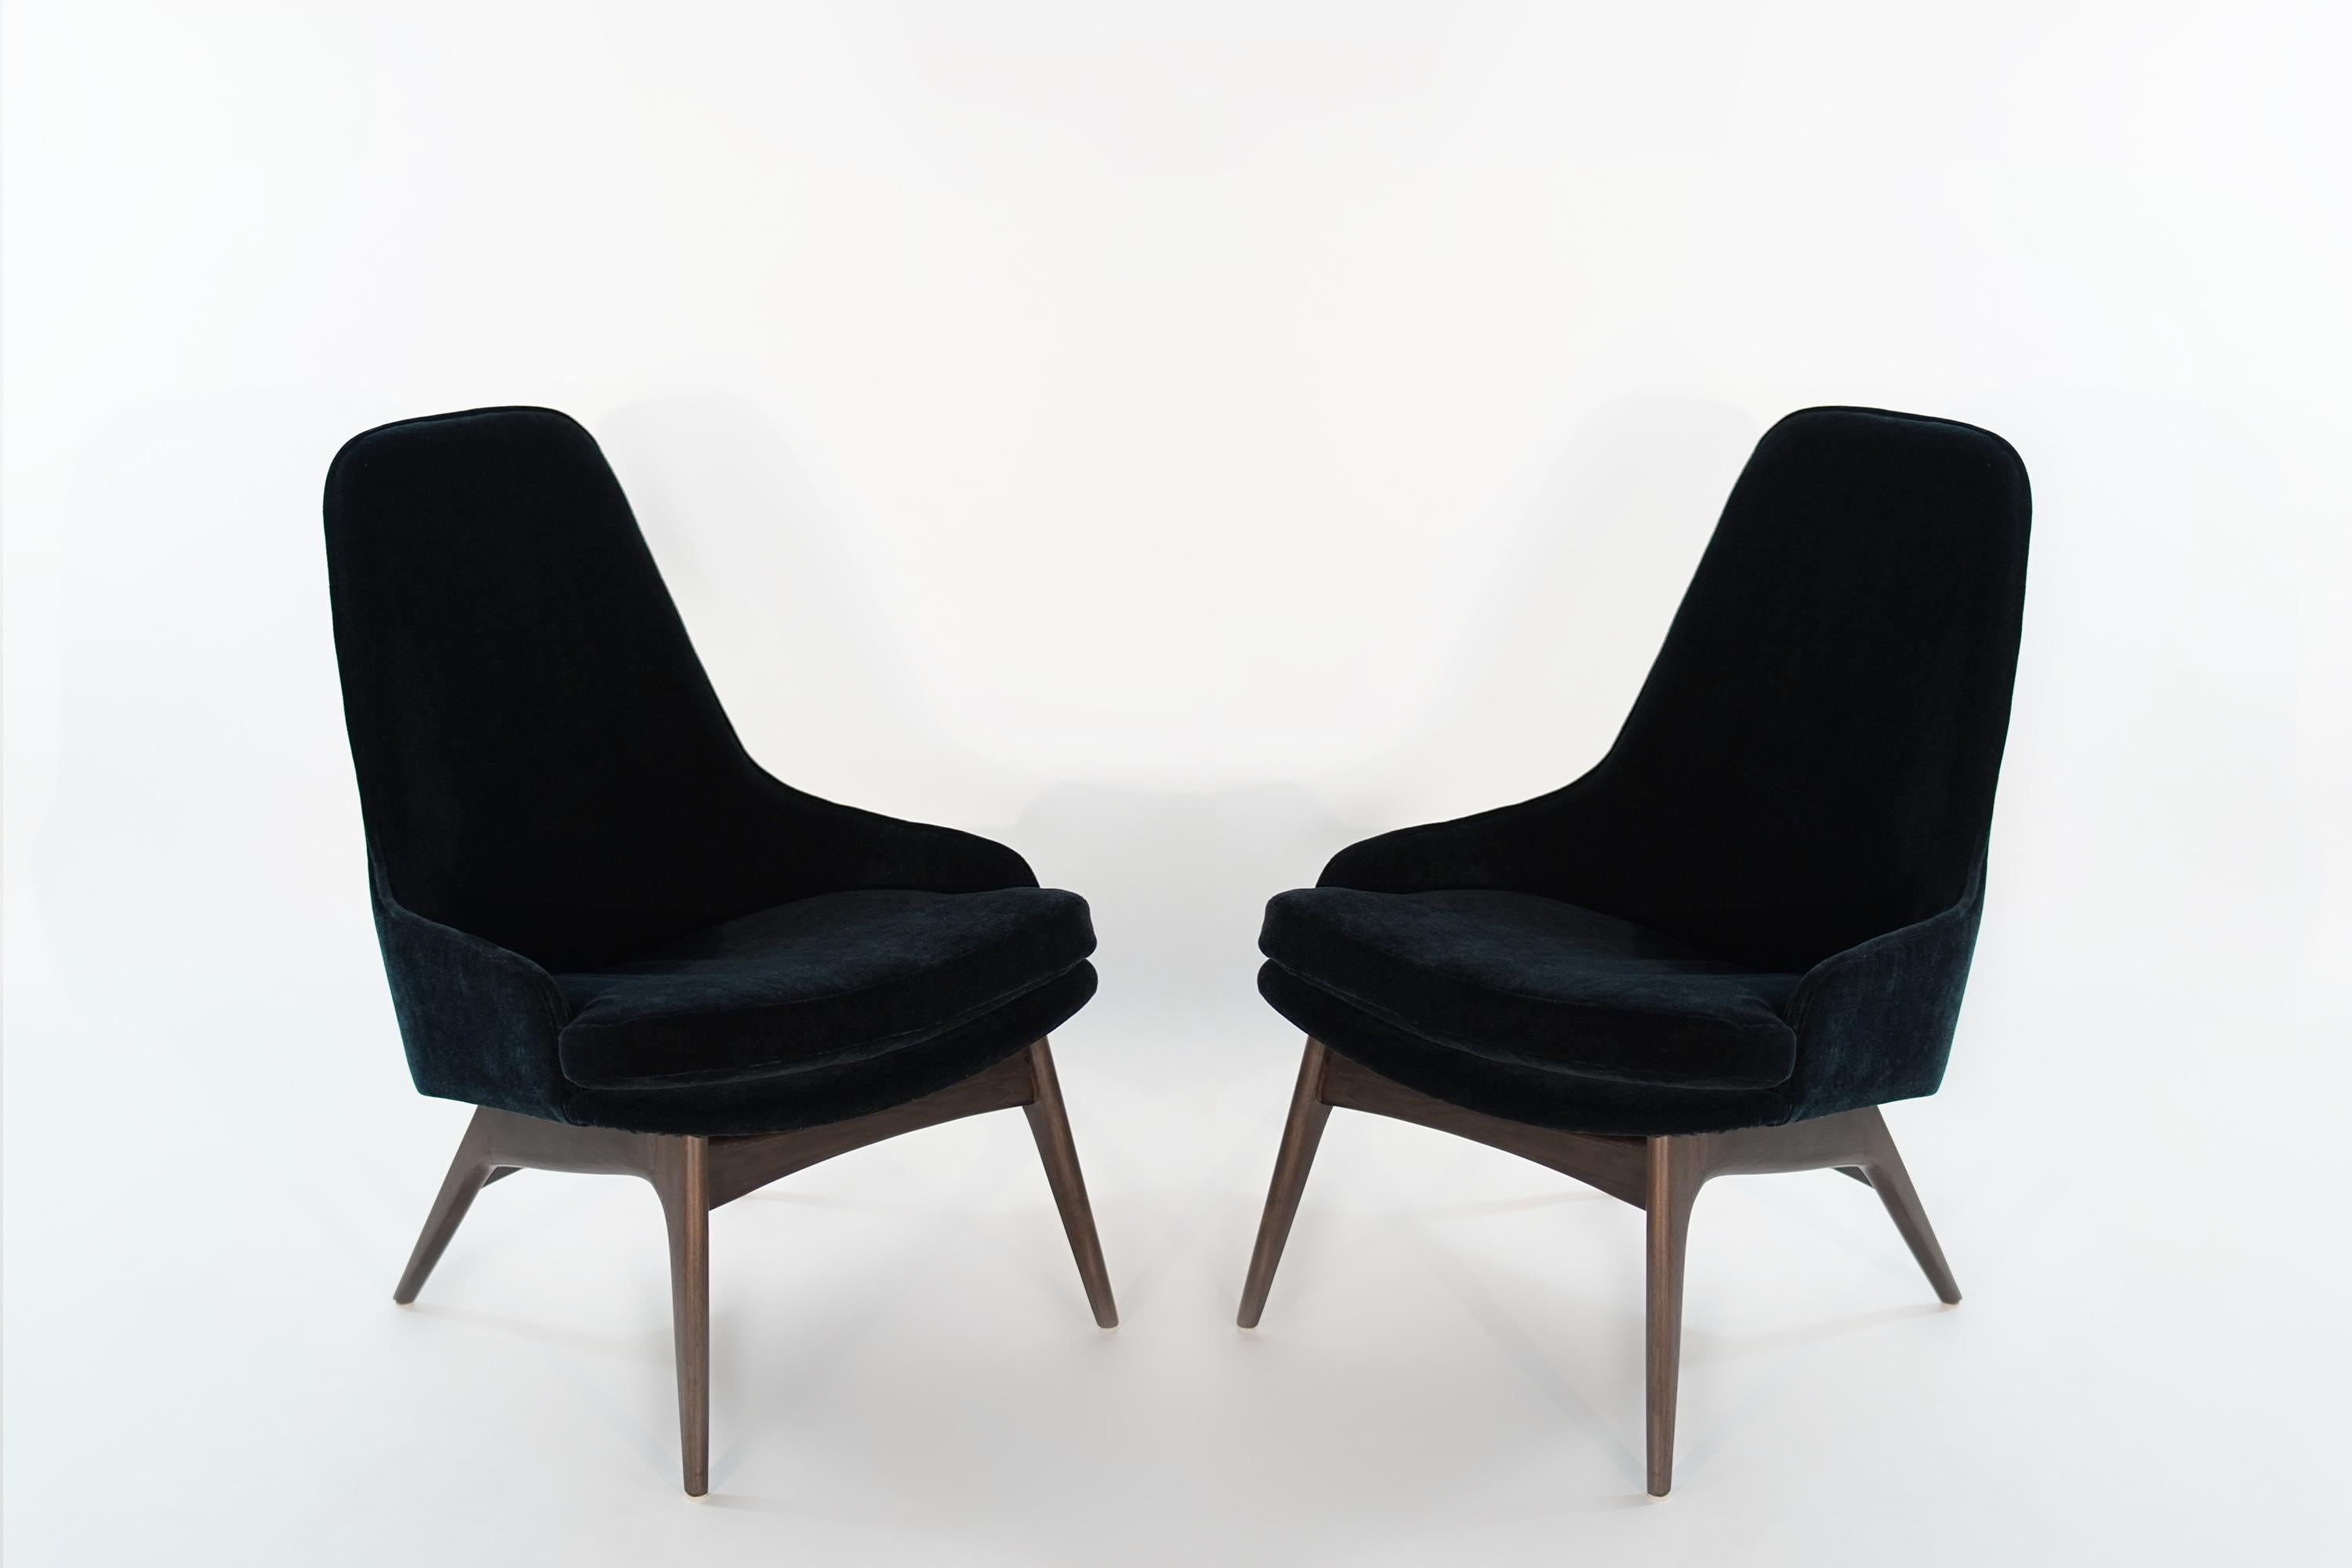 Ensemble sculptural de chaises pantoufles conçu par Adrian Pearsall pour Craft Associates, vers les années 1950. Bases en noyer entièrement restaurées, retapissées en mohair bleu marine par Donghia.